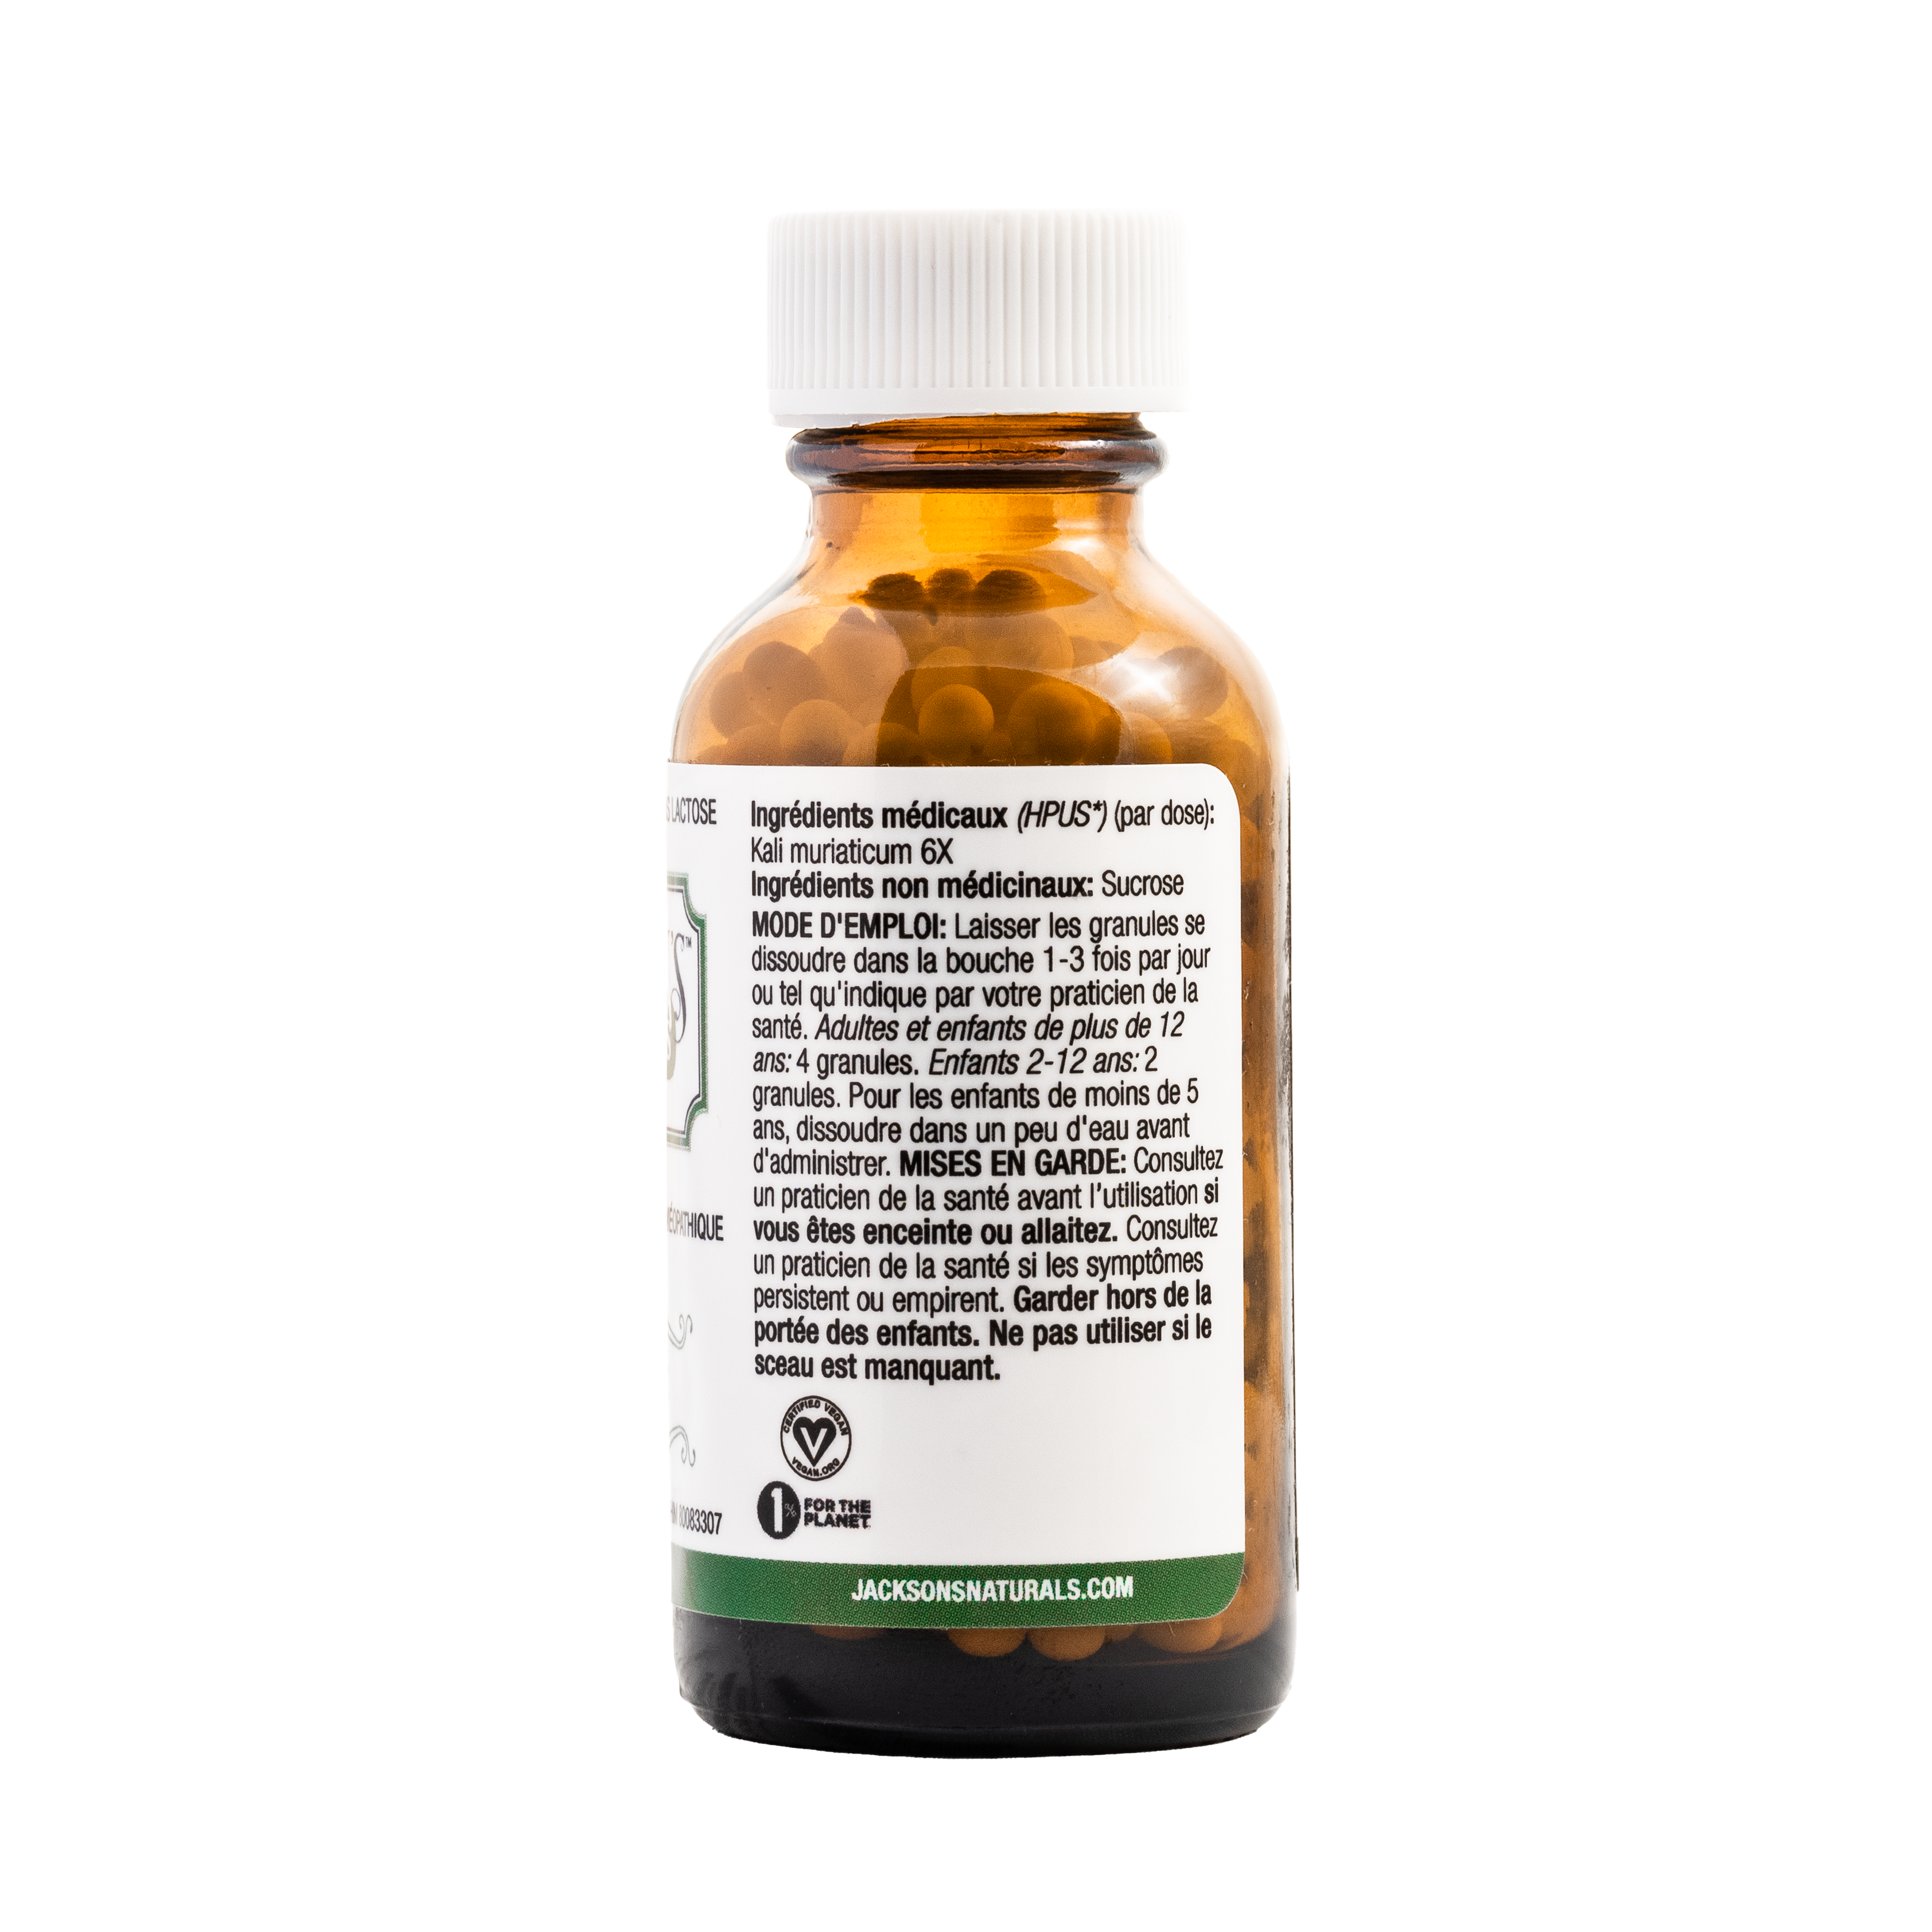 #5 Kali mur 6X (chlorure de potassium) – Le premier sel de cellules de Schuessler (tissus) certifié végétalien et sans lactose